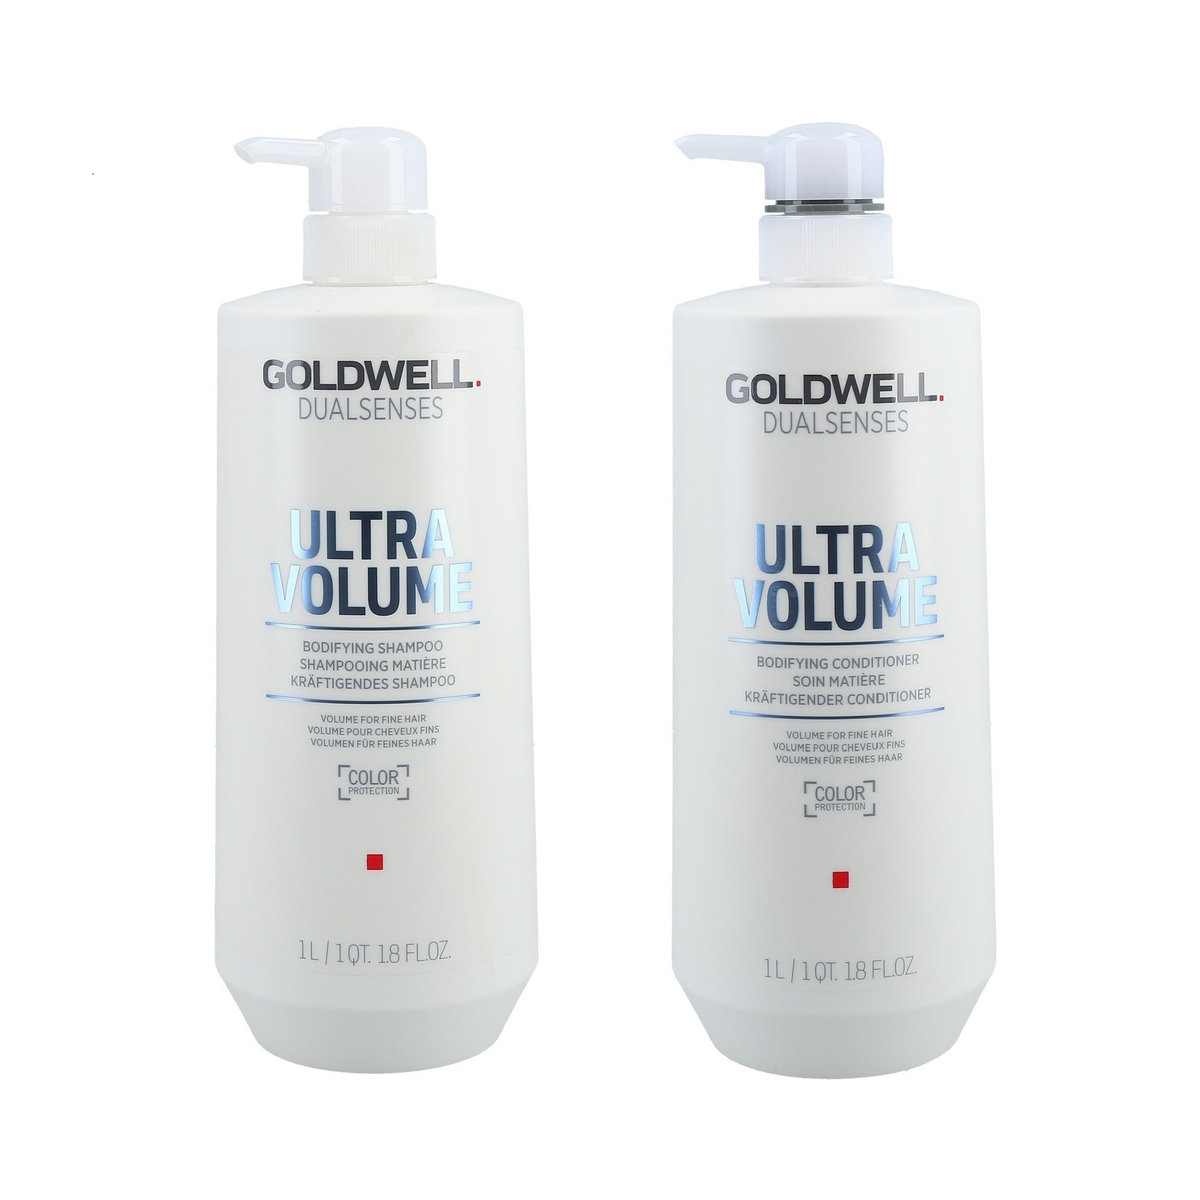 goldwell szampon nabłyszczający cienkie do farbowanych